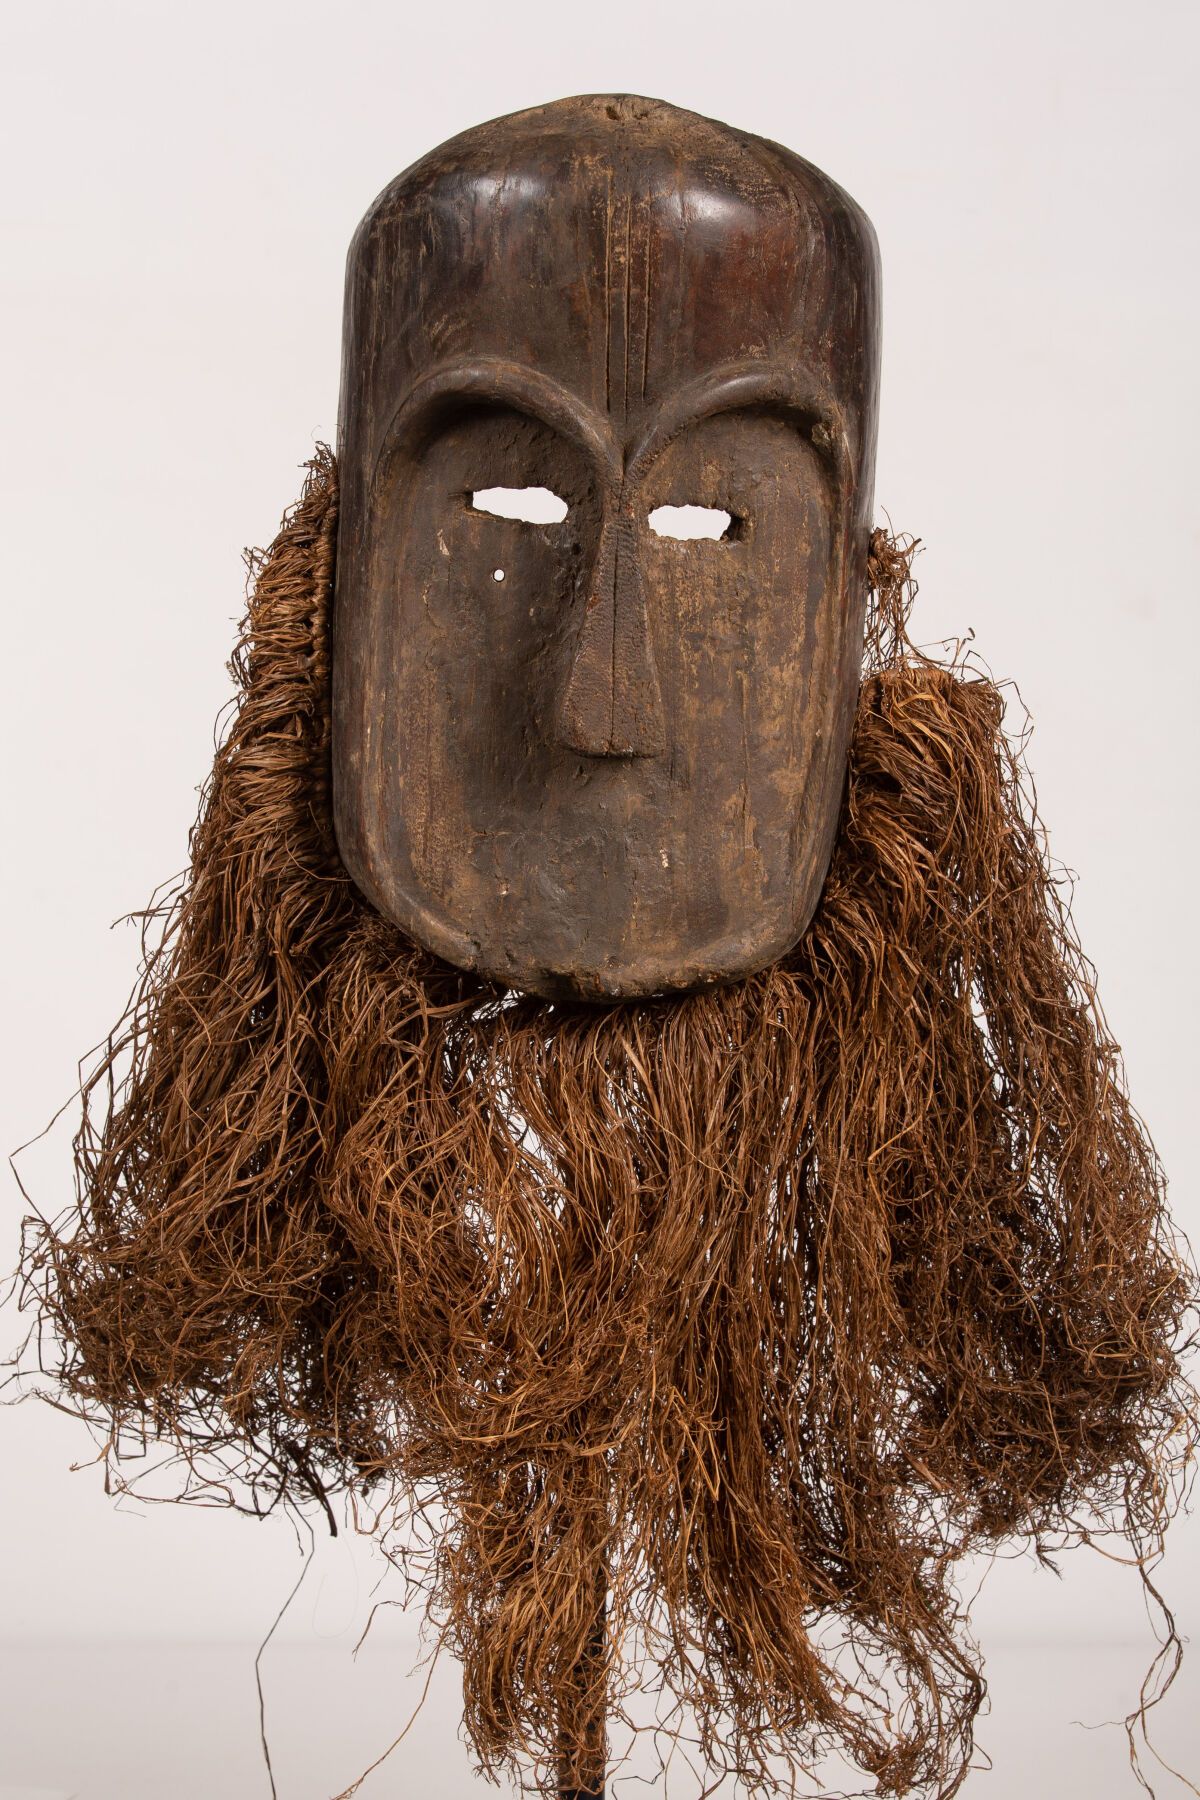 Null 加蓬。
獠牙面具，为殖民地圈子的副本。
高_70厘米，宽_40厘米，长_16厘米。